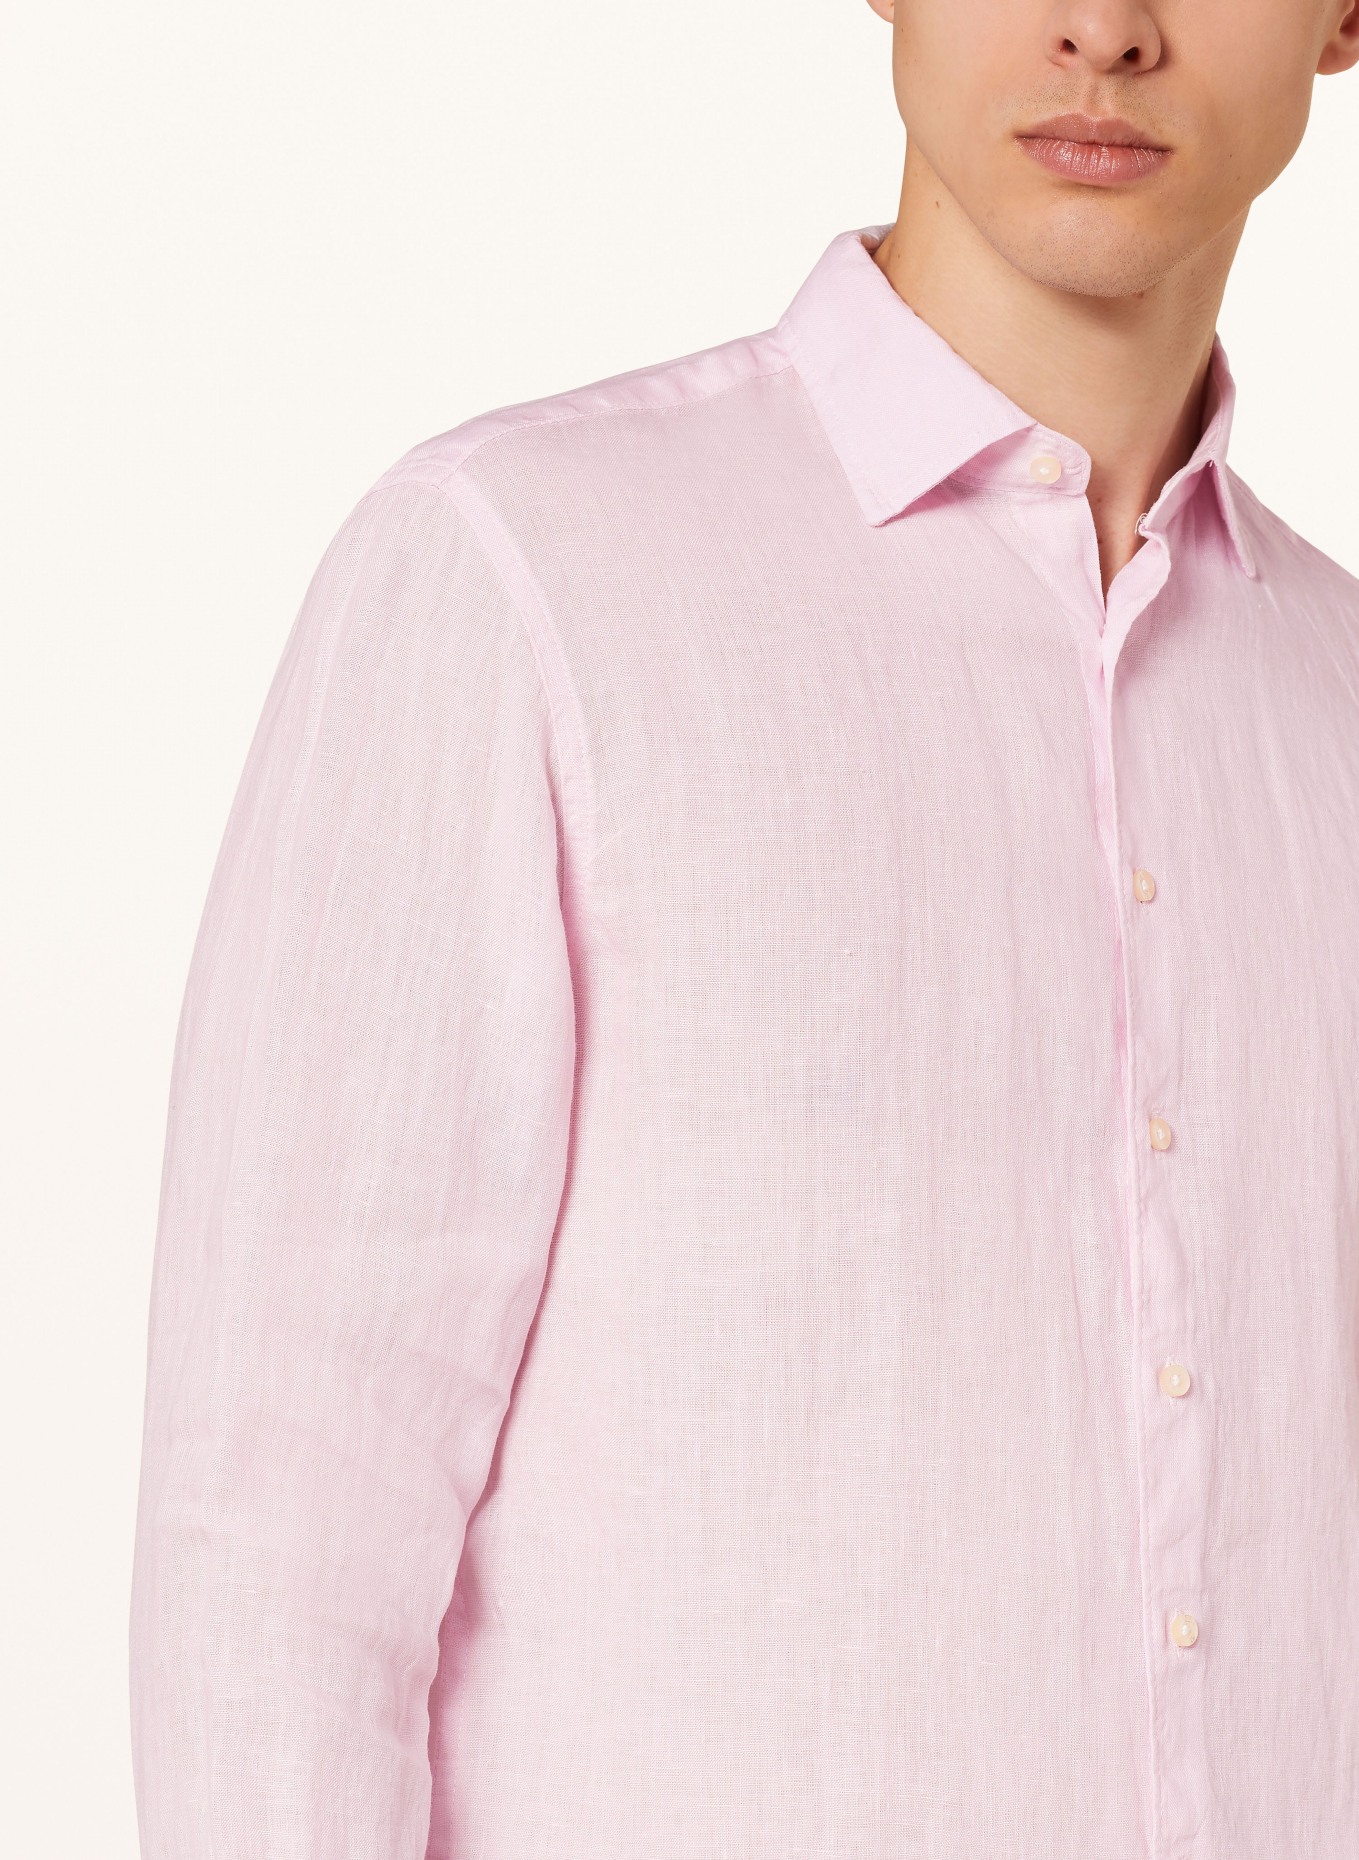 CINQUE Linen shirt CISTEVEN regular fit, Color: PINK (Image 4)